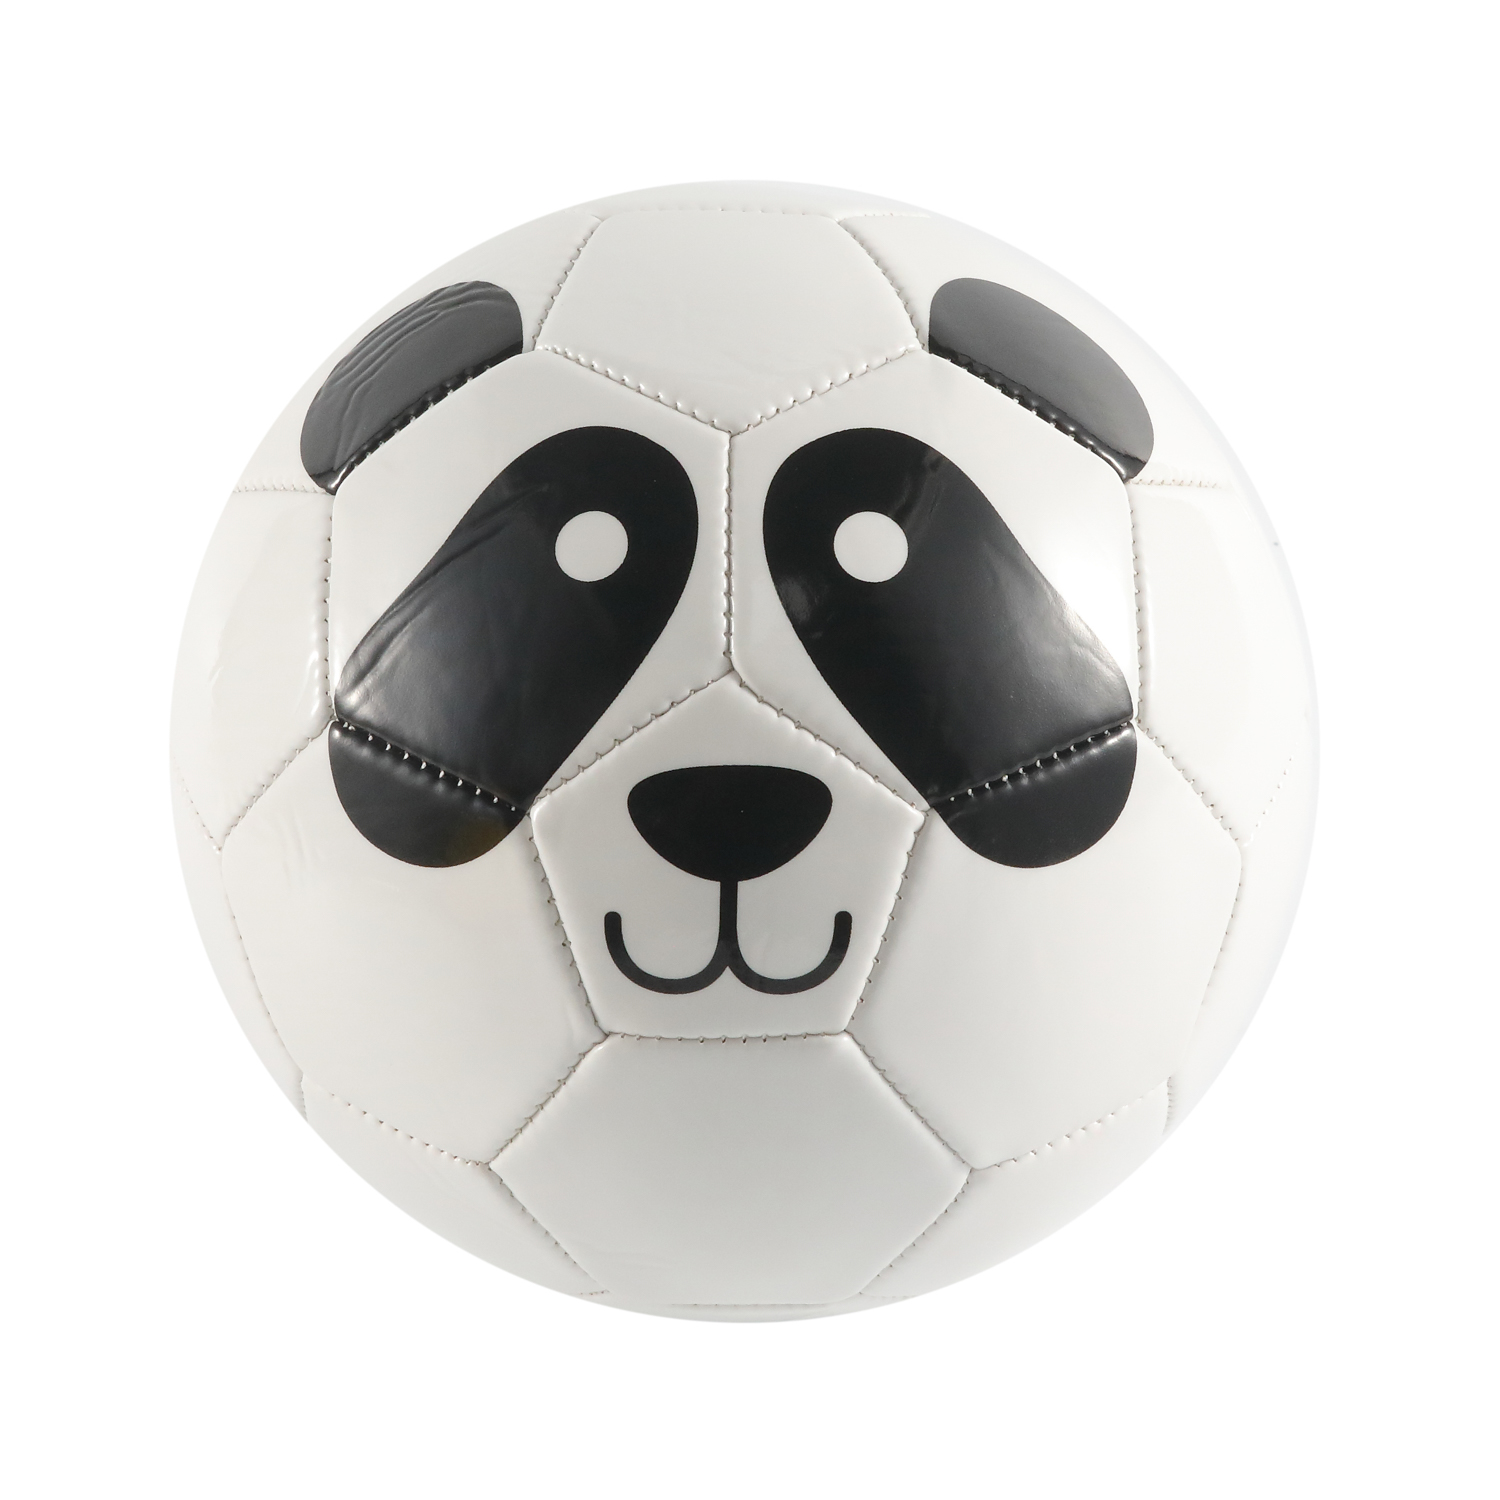 Balón de fútbol al por mayor de fábrica Cubierta de PVC Balón de fútbol cosido a máquina personalizado